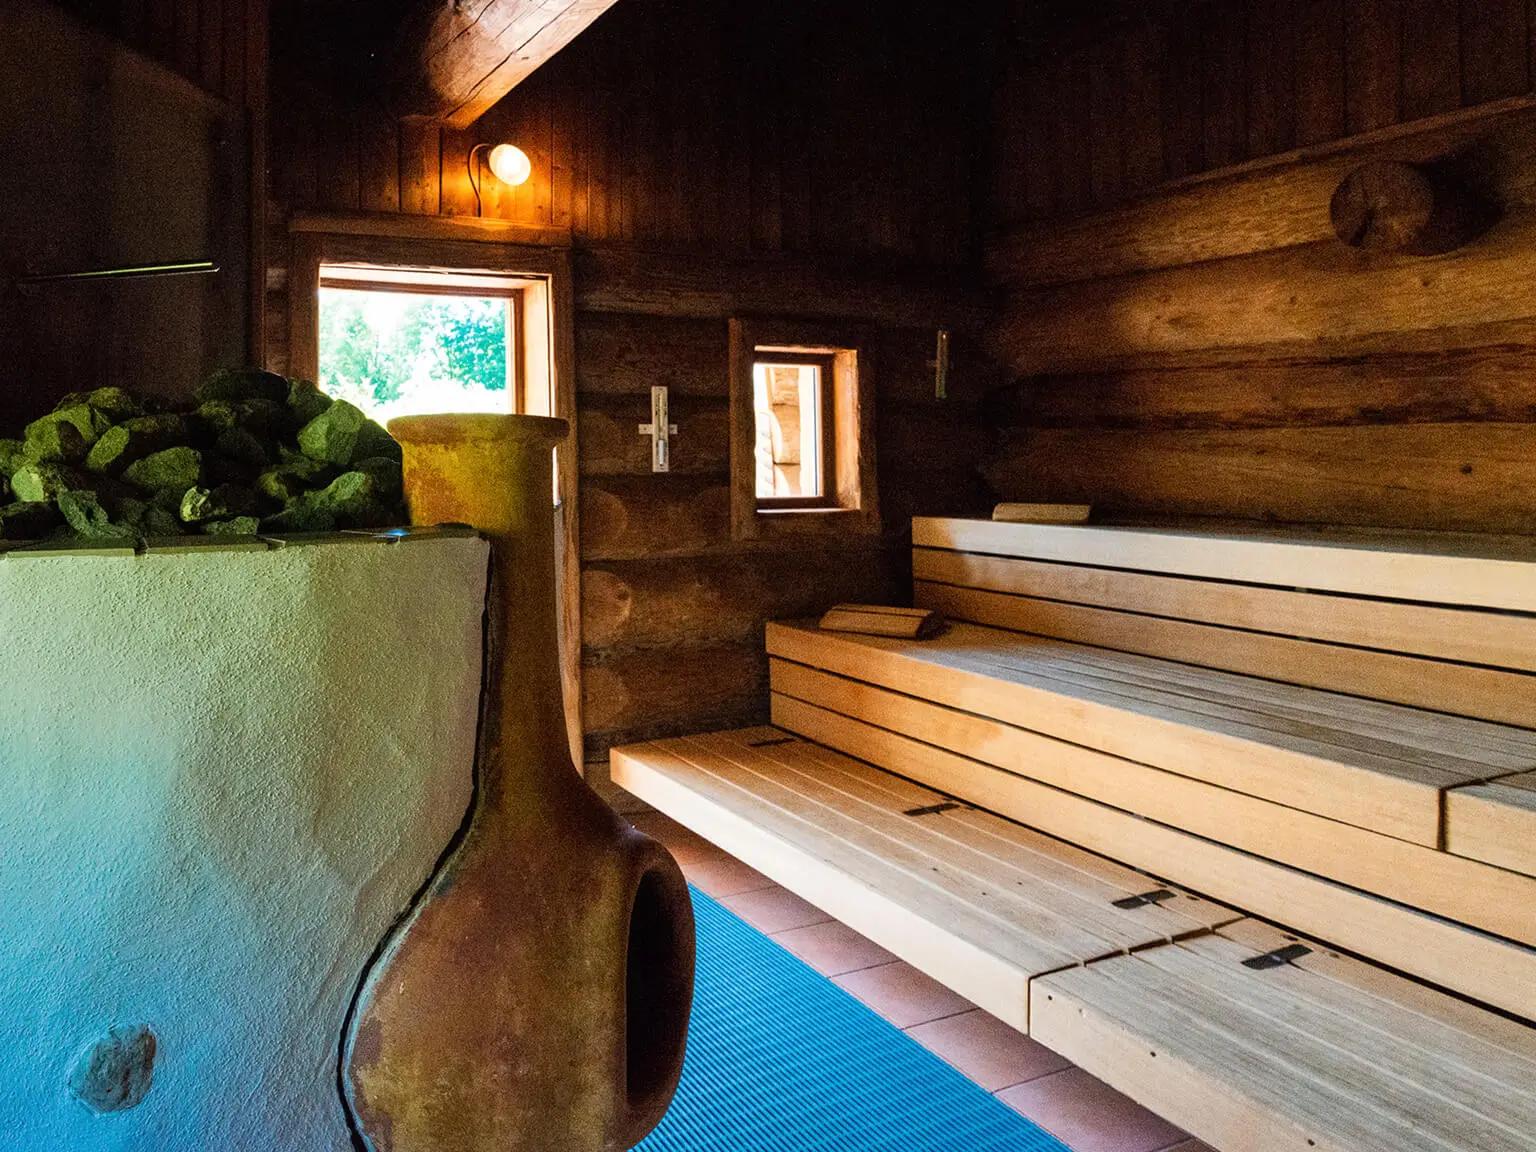 Blick in eine Sauna. Rechts die Sitzbänke aus hellem Holz, links der Ofen mit kleinem Kamin